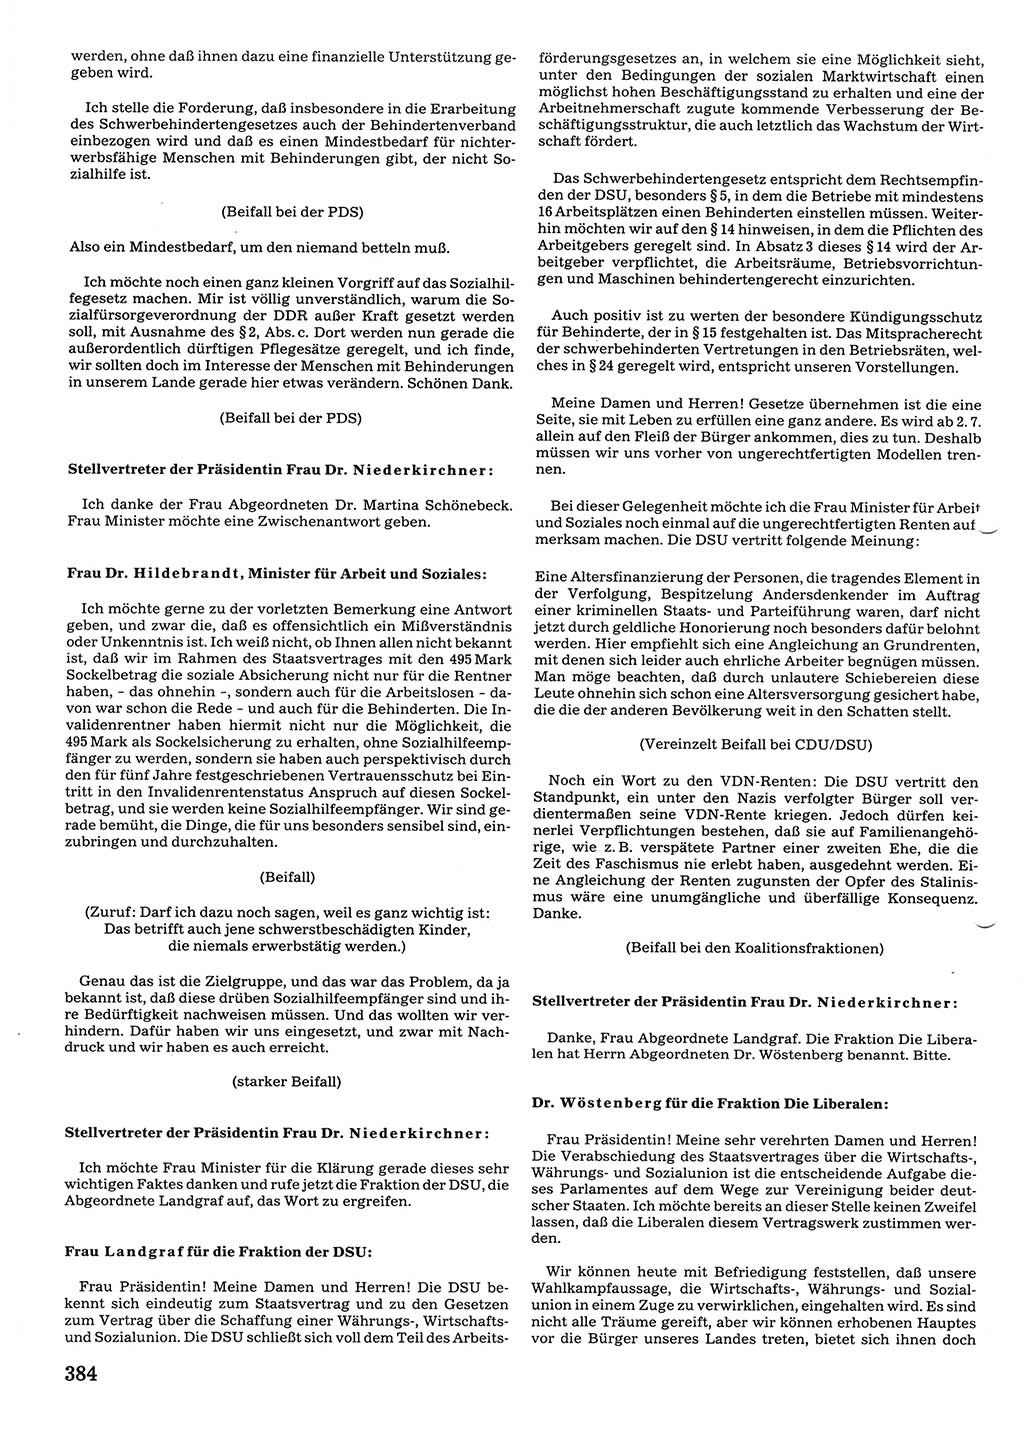 Tagungen der Volkskammer (VK) der Deutschen Demokratischen Republik (DDR), 10. Wahlperiode 1990, Seite 384 (VK. DDR 10. WP. 1990, Prot. Tg. 1-38, 5.4.-2.10.1990, S. 384)